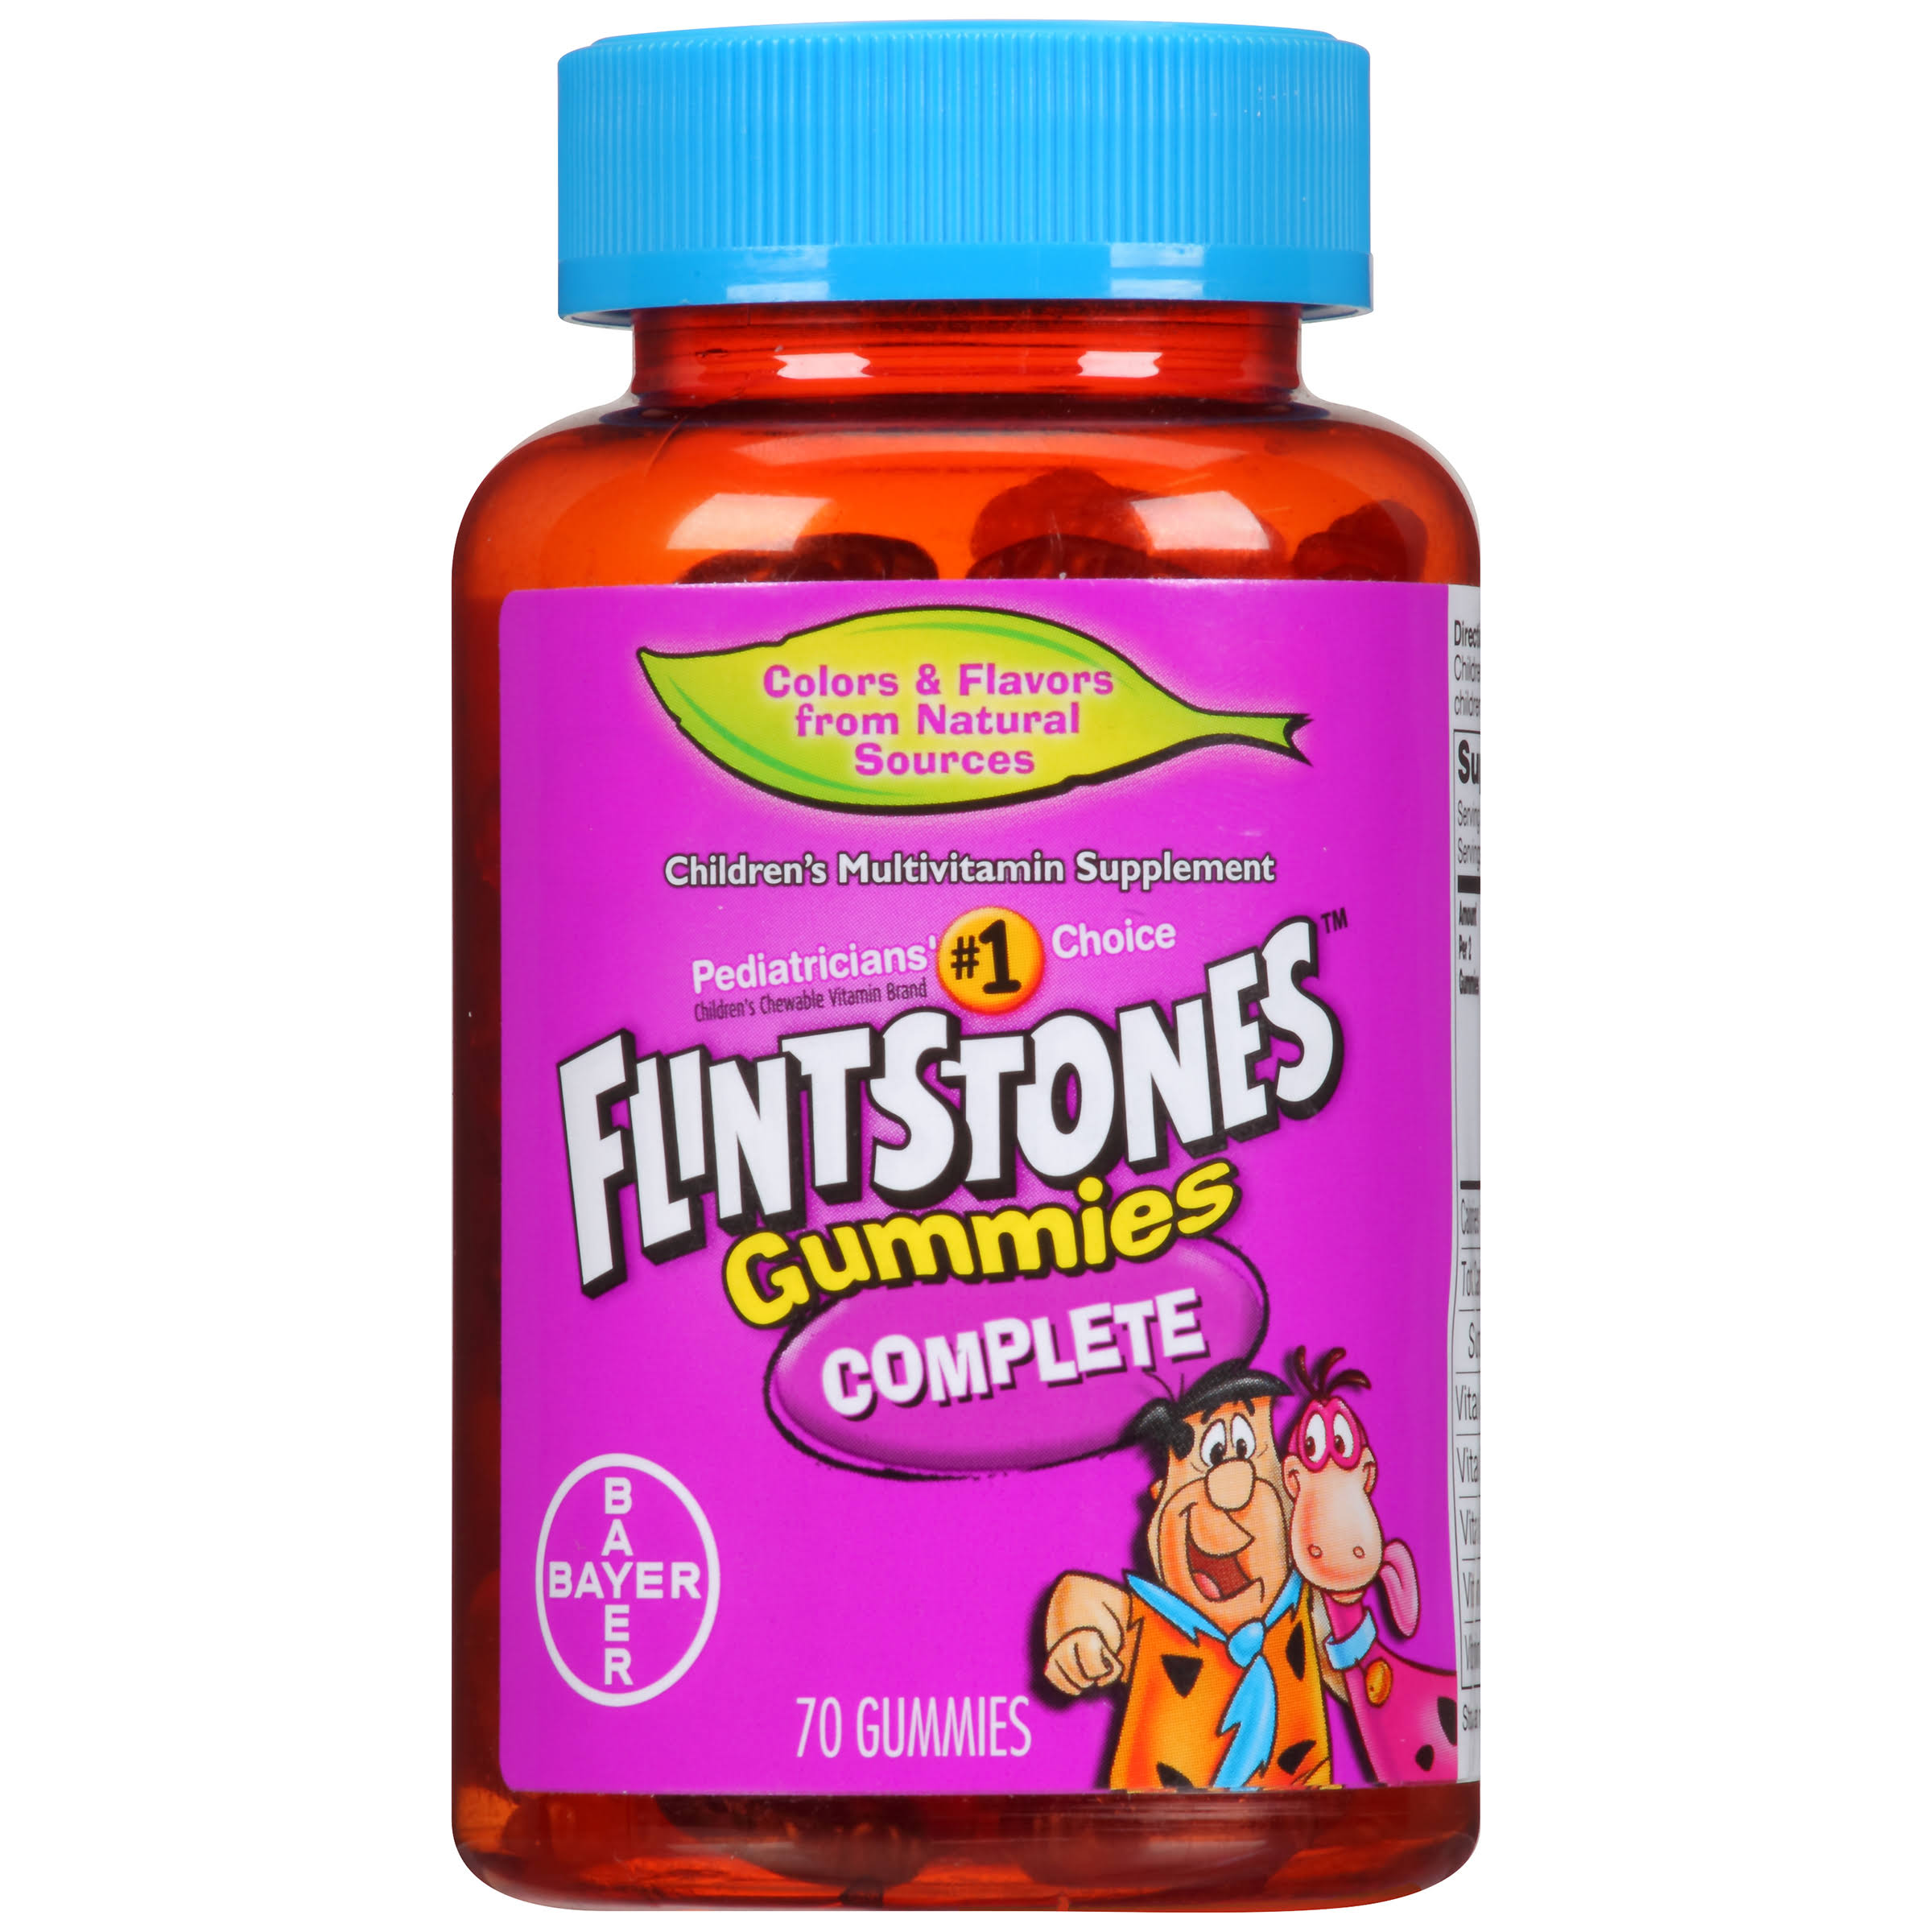 Flintstones Children's Multivitamin Complete Gummies Supplement - 70 Count